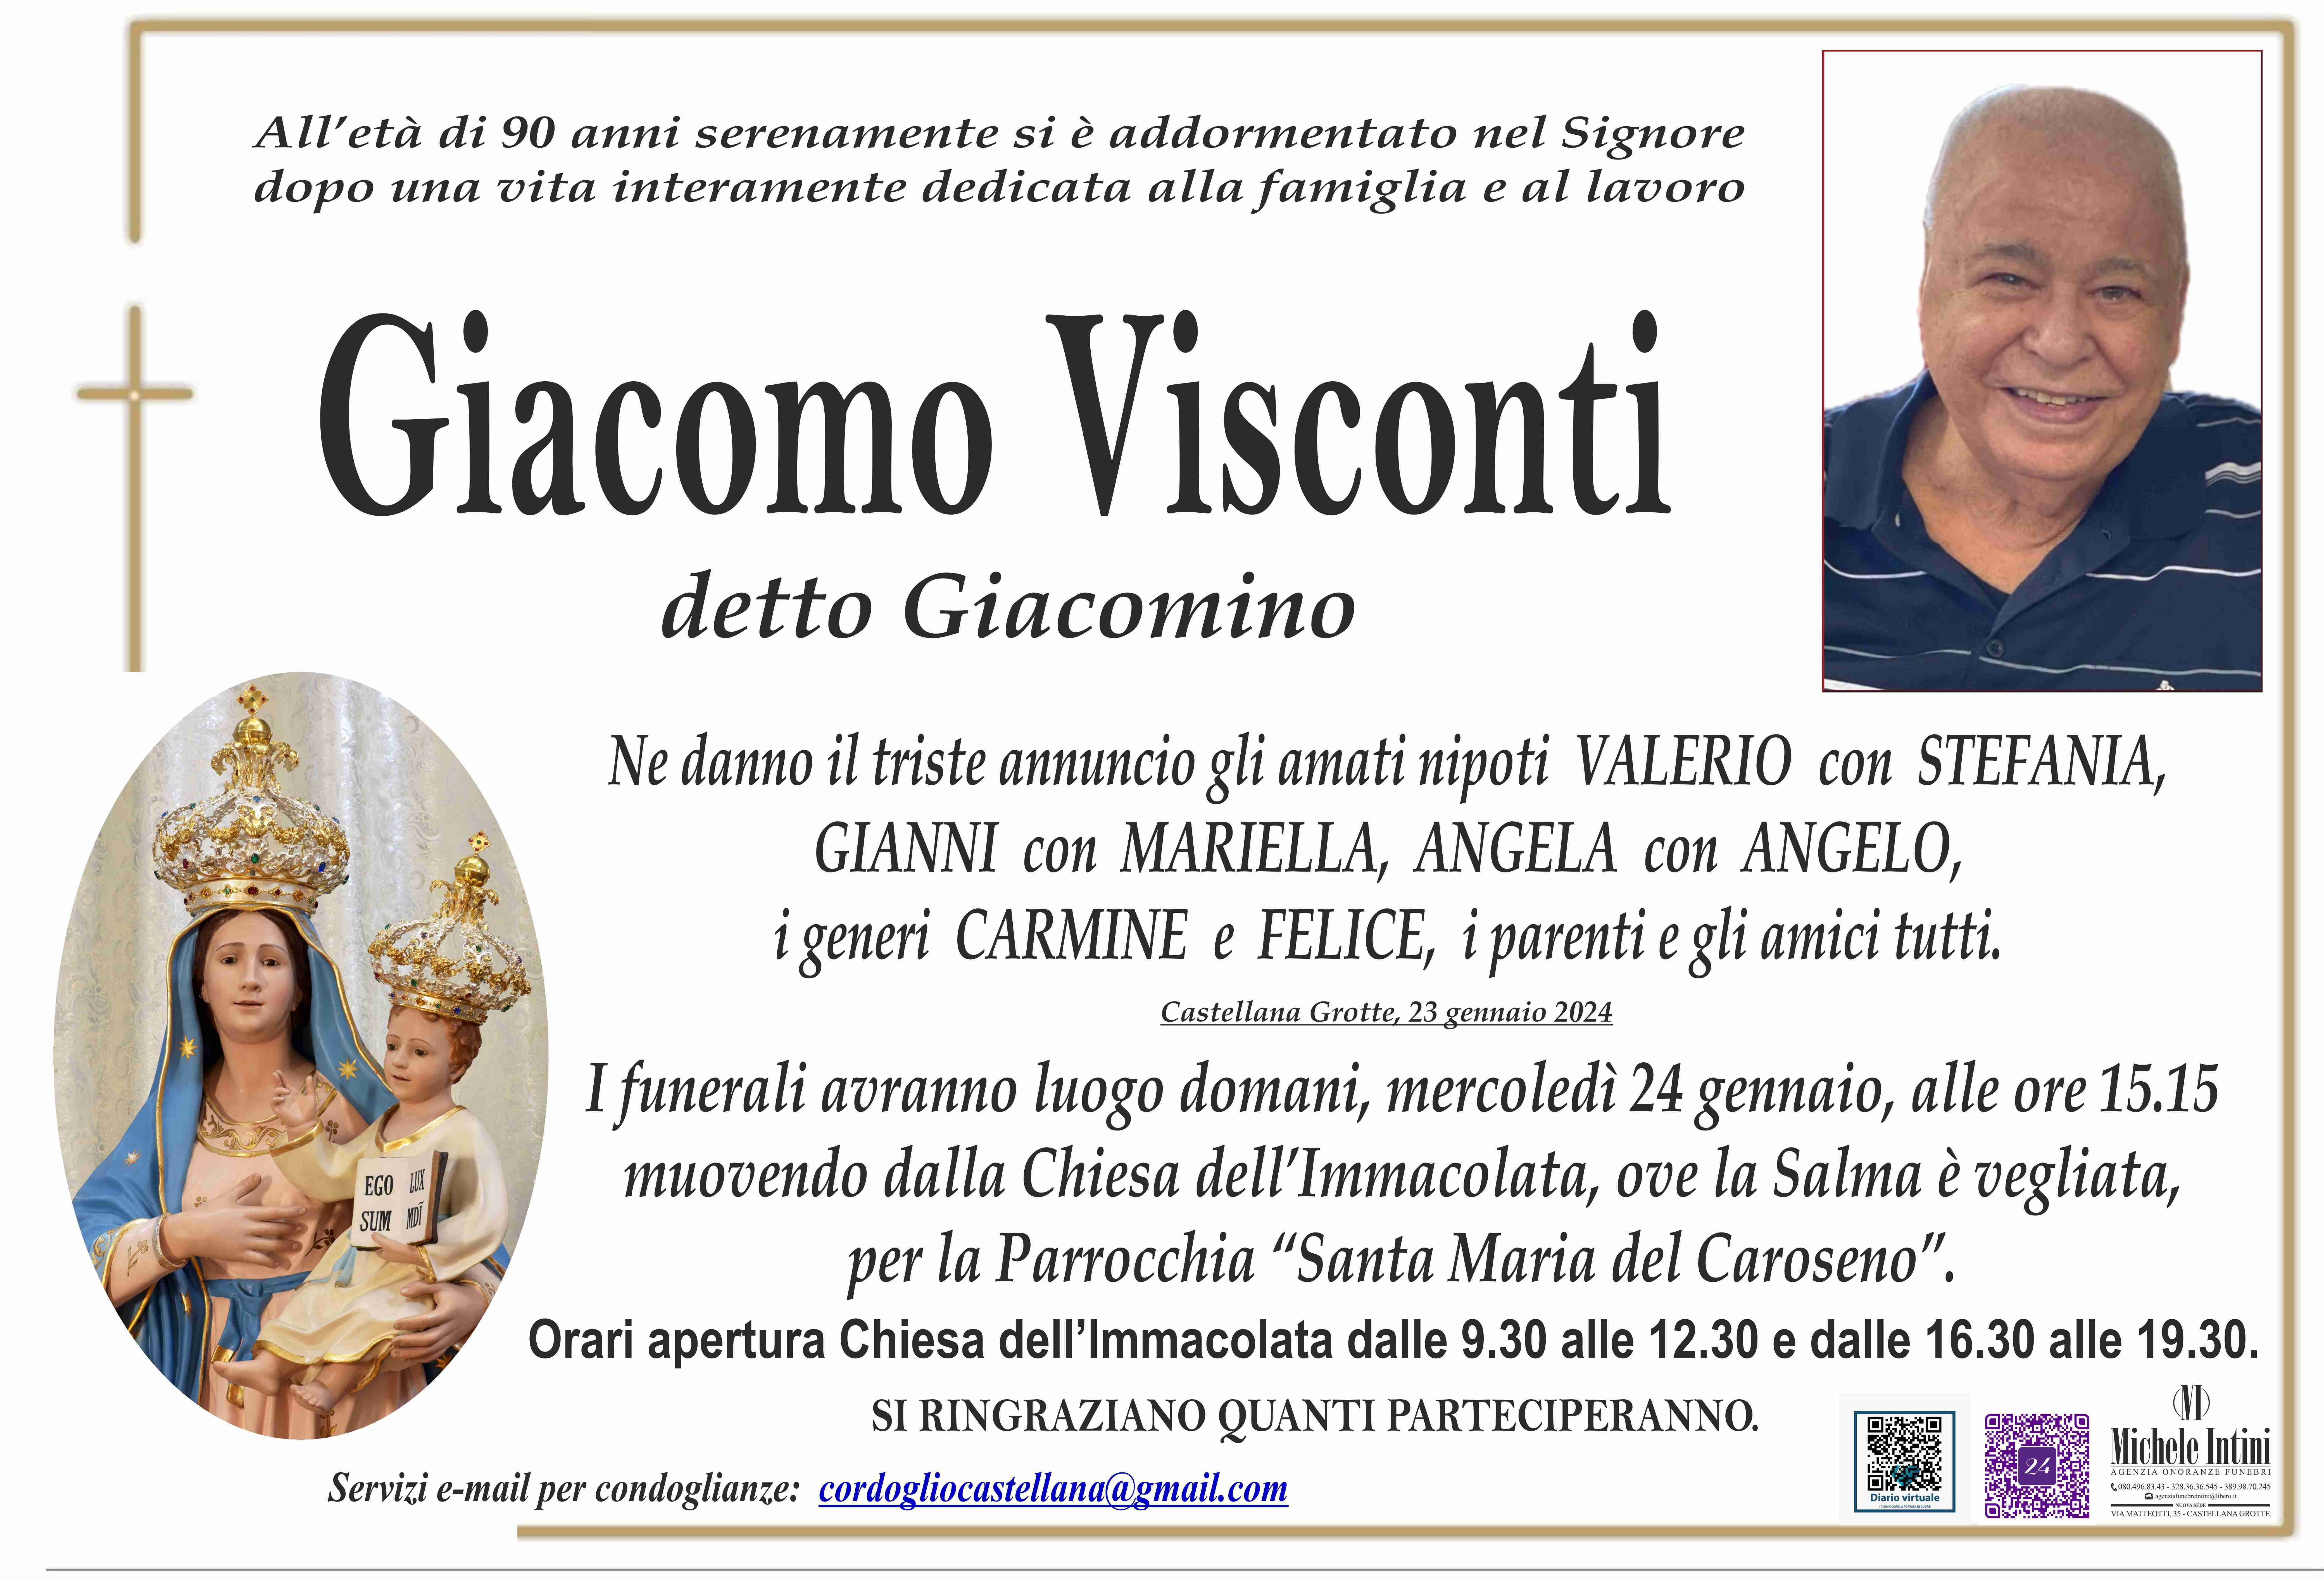 Giacomo Visconti